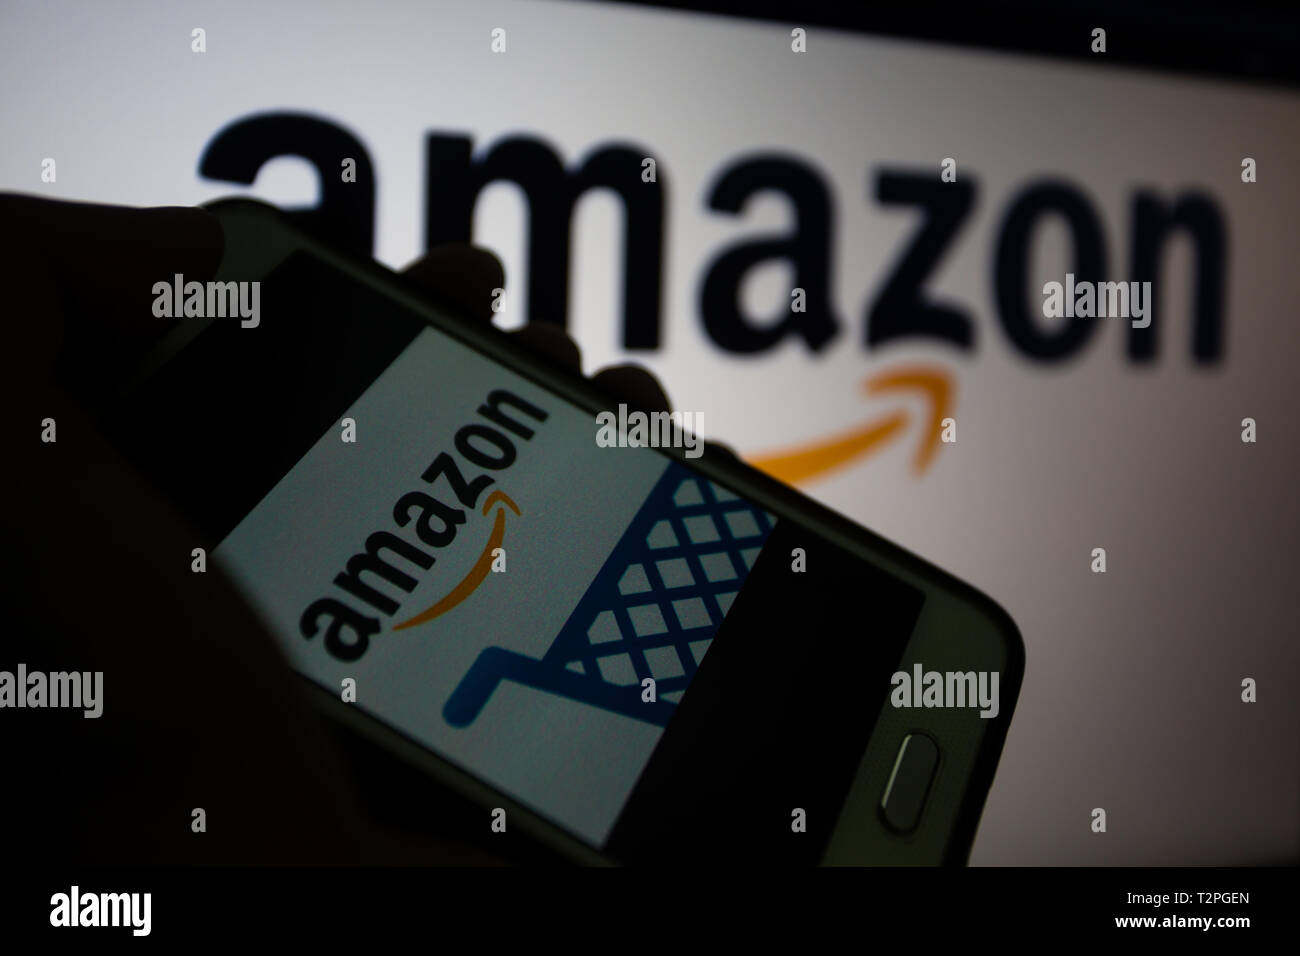 Amazon.com, multinationale américaine entreprise de technologie qui se  concentre dans l'e-commerce, logo est affiché sur un écran de smartphone,  le logo sur fond flou Photo Stock - Alamy